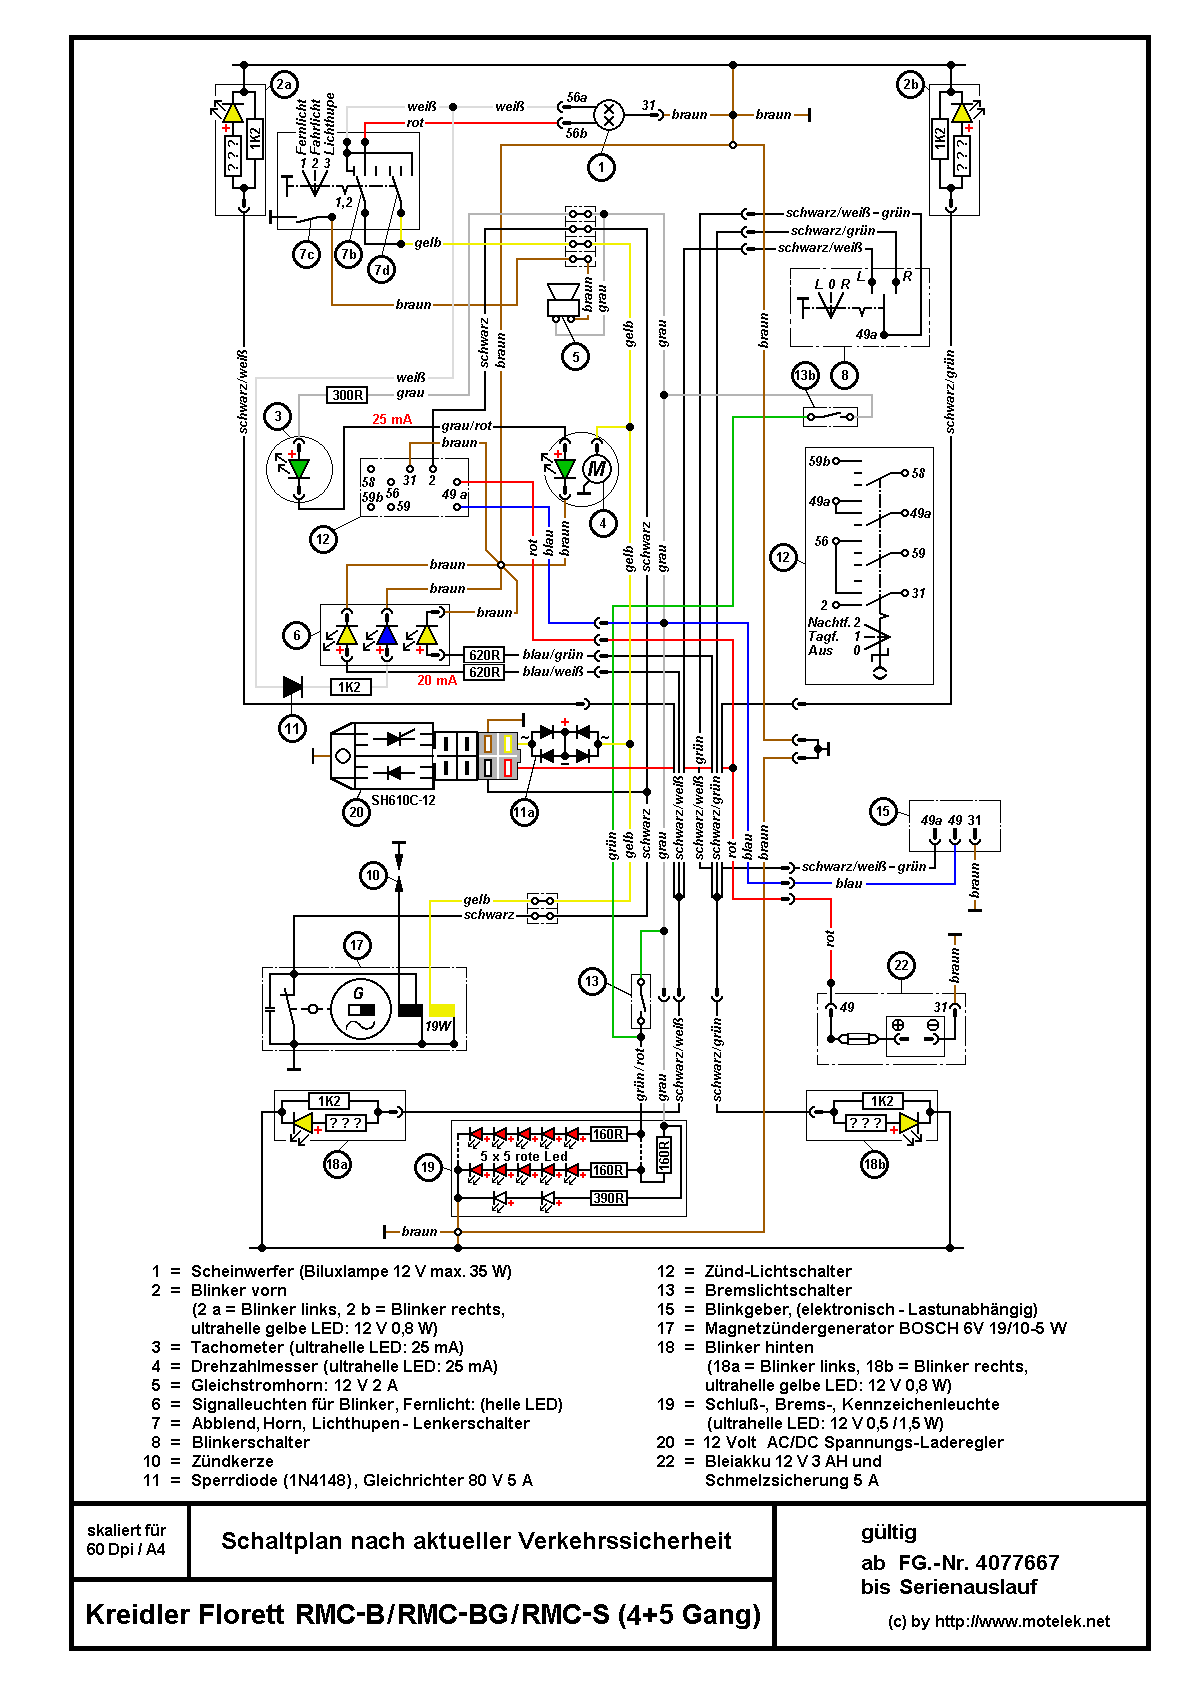 Schaltpläne, Elektrik - kreidler-winkelmann 1978 puch wiring diagram 